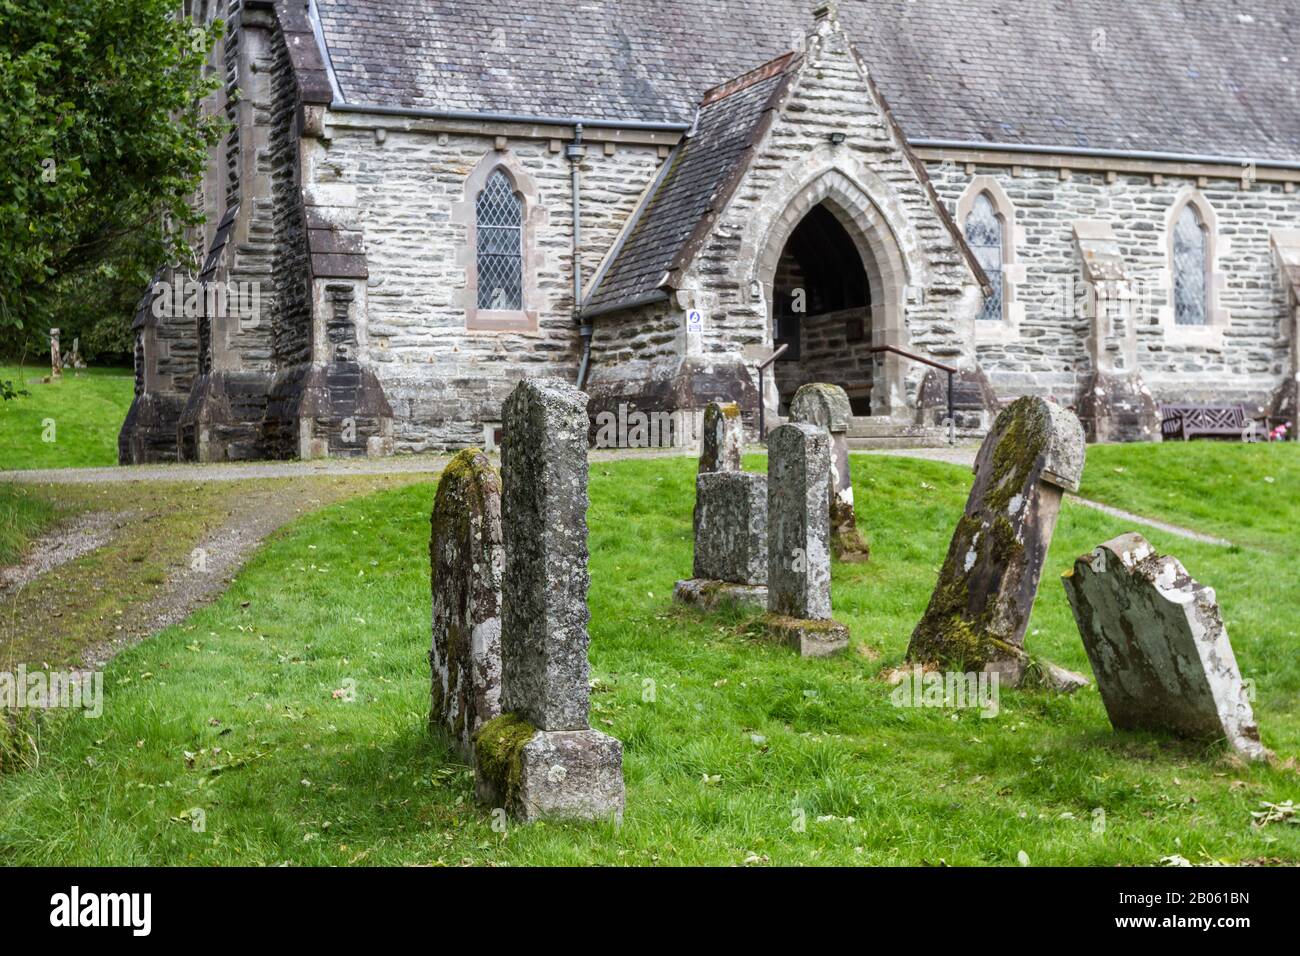 Balquhidder, Scotland  - September 17 2019: Balquhidder Church and cemetery in the Scottish Highlands, UK September 17, 2019 Stock Photo